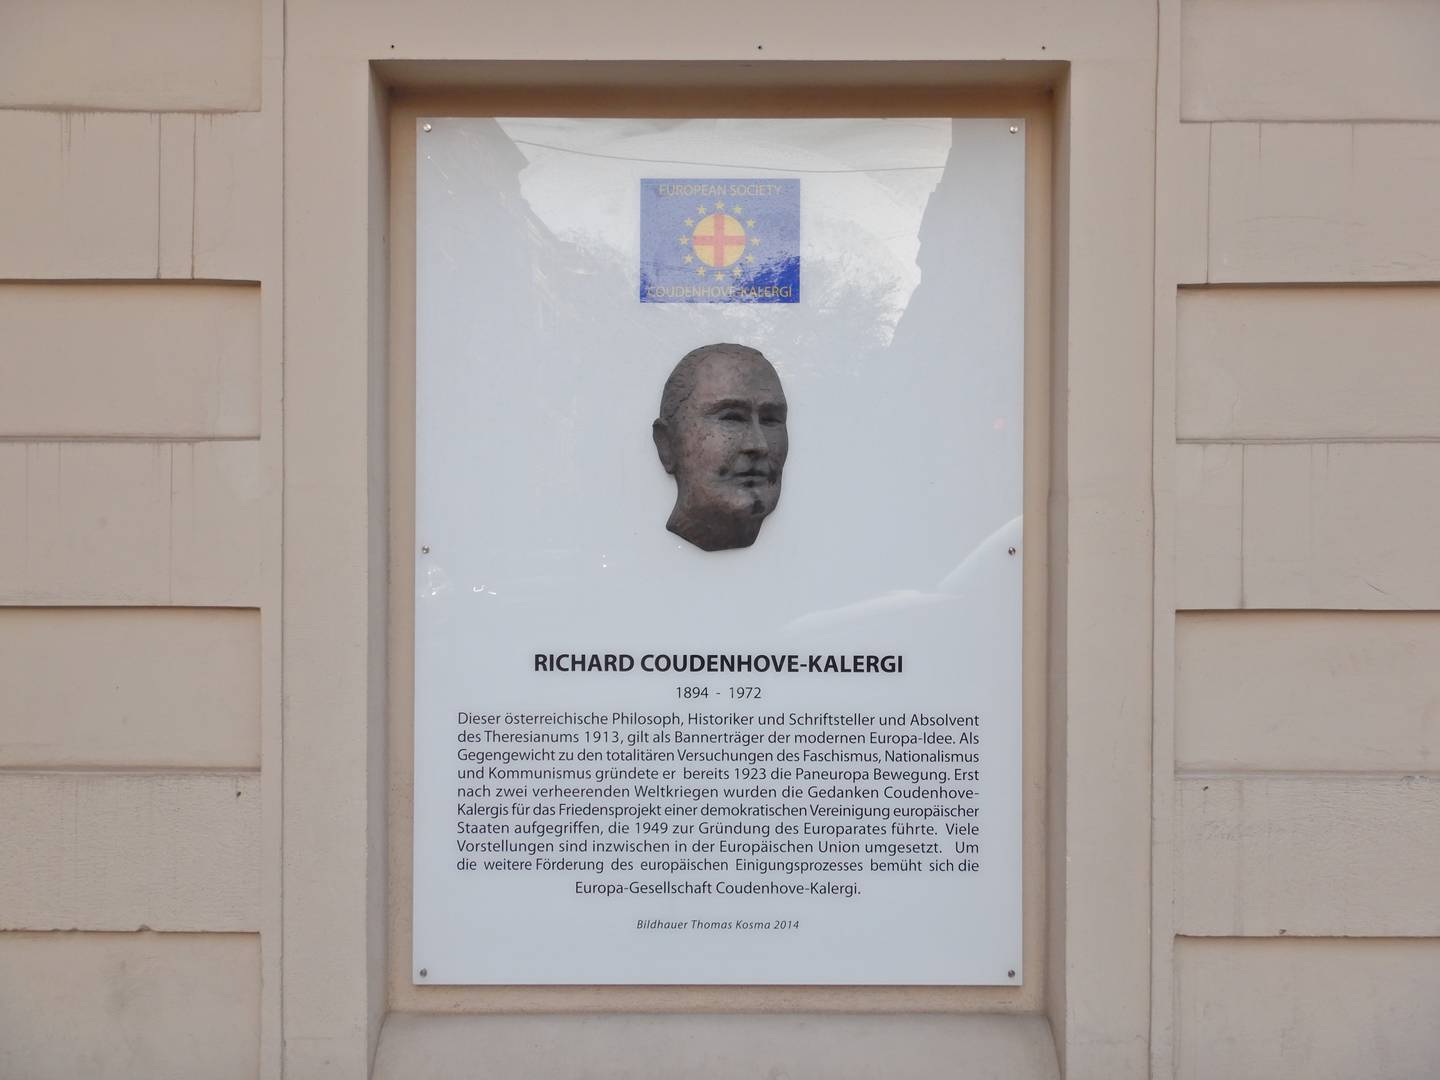 Мемориальная доска Рихарду Николаусу Куденхове-Калерги